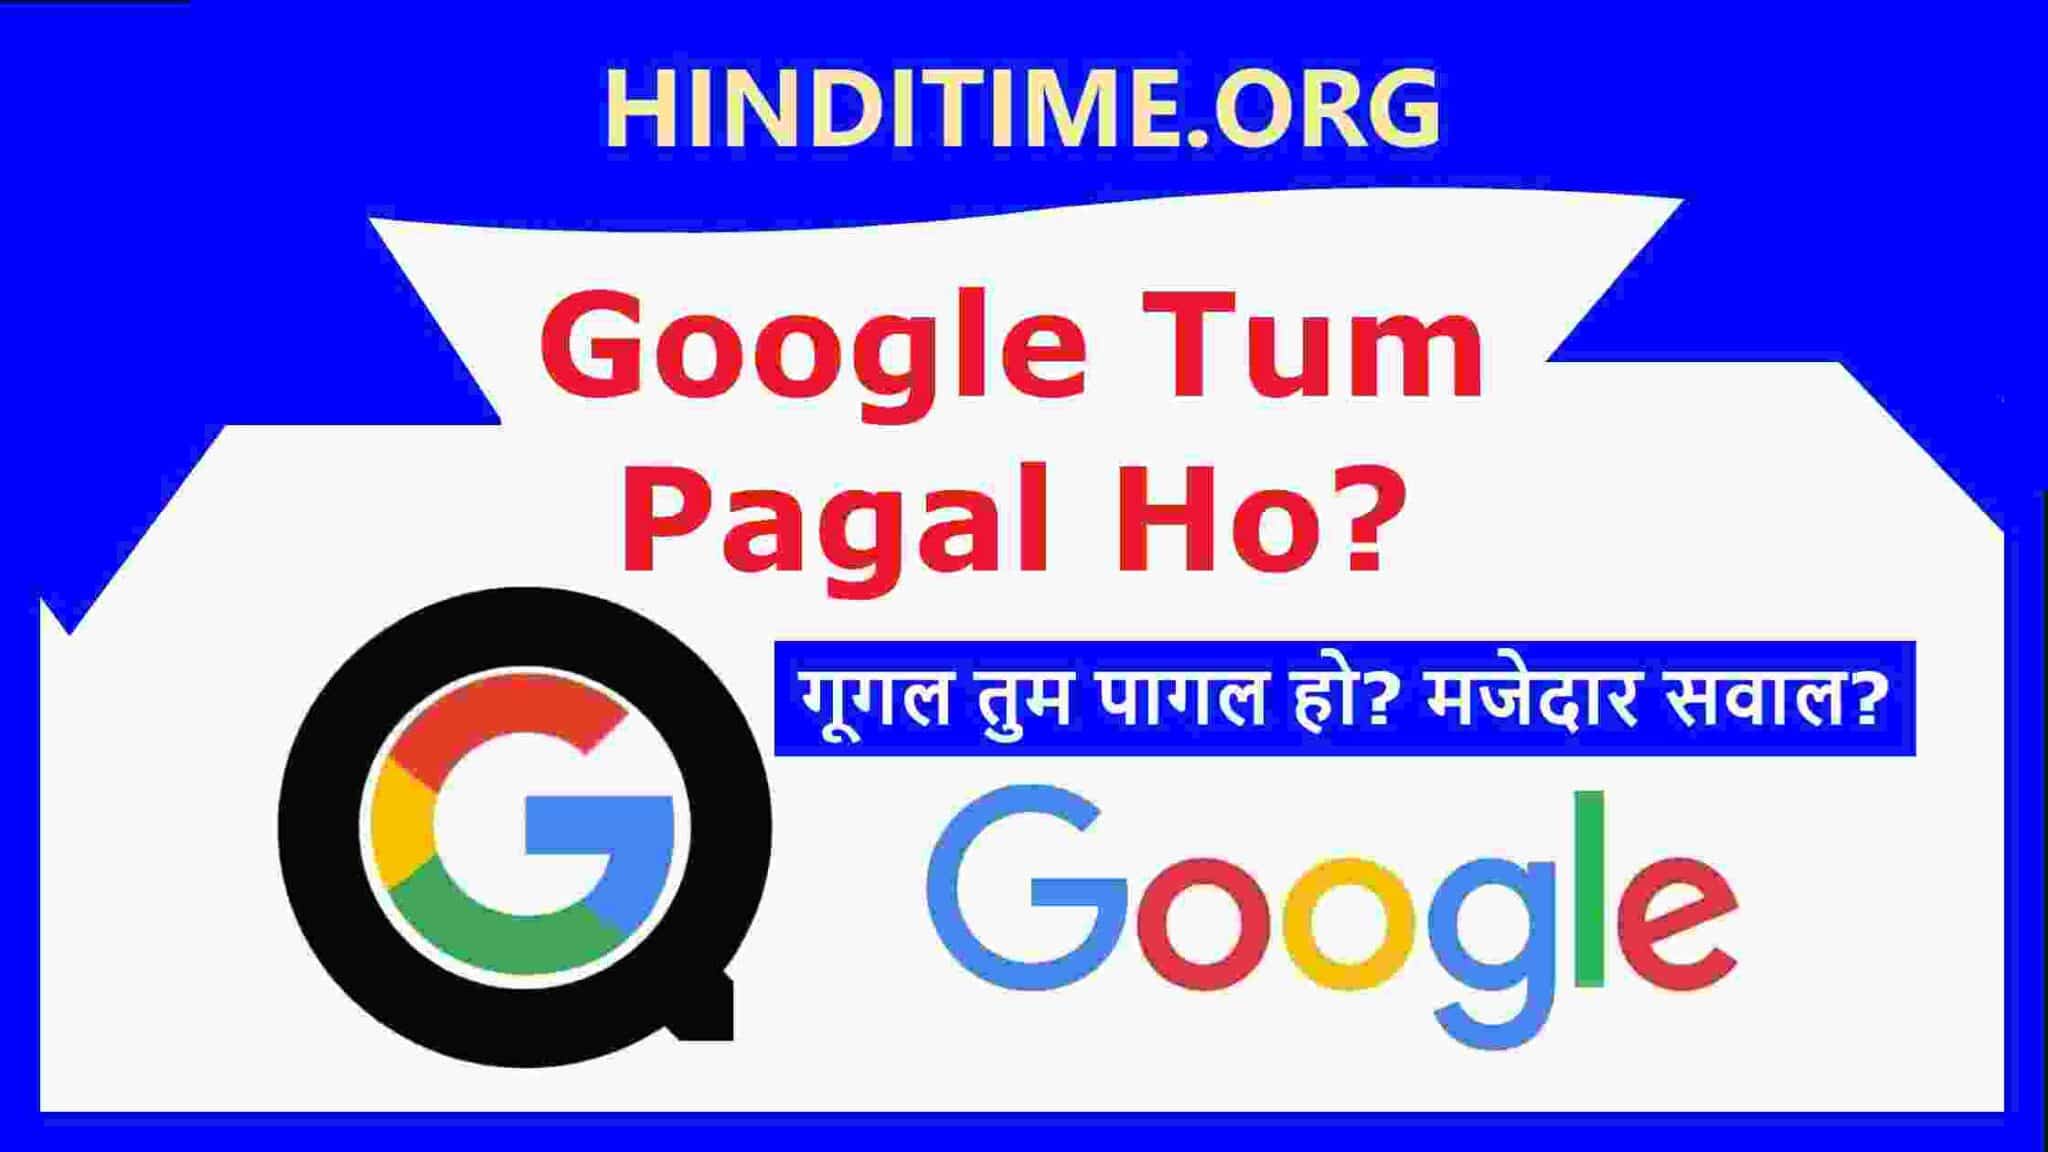 Google Tum Pagal Ho Kya - गूगल तुम पागल हो क्या? गूगल से पूछा यह मजेदार सवाल 2022